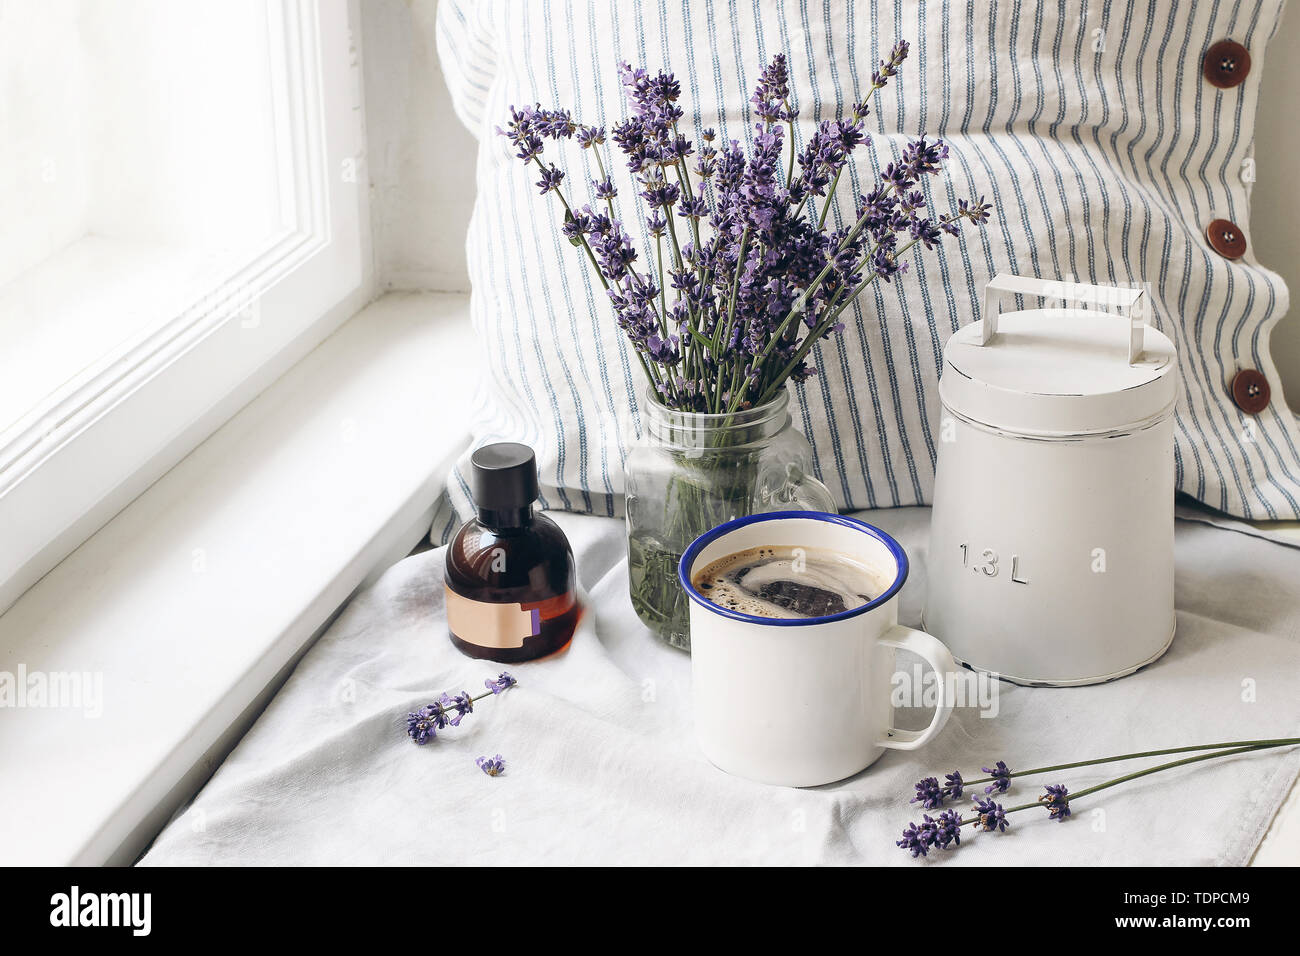 Französische Sommer noch leben. Tasse Kaffee, Lavendel Blumen Blumenstrauß, Essence öl Flasche auf der Fensterbank. Feminin Foto, blumige Komposition w Stockfoto